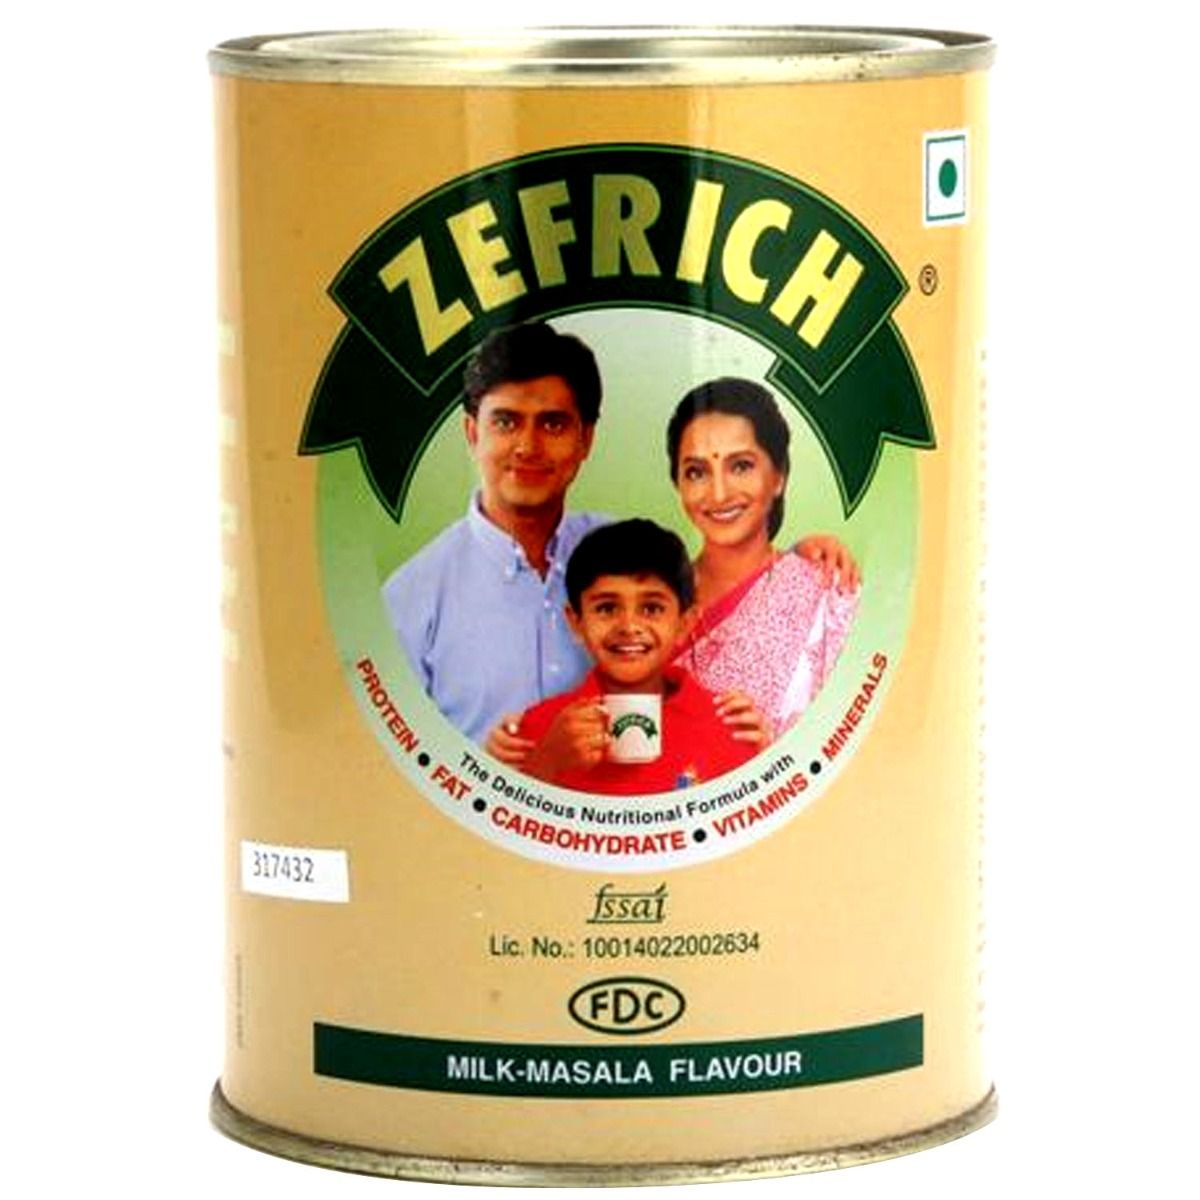 Zefrich Milk-Masala Flavoured Powder, 200 gm Tin, Pack of 1 